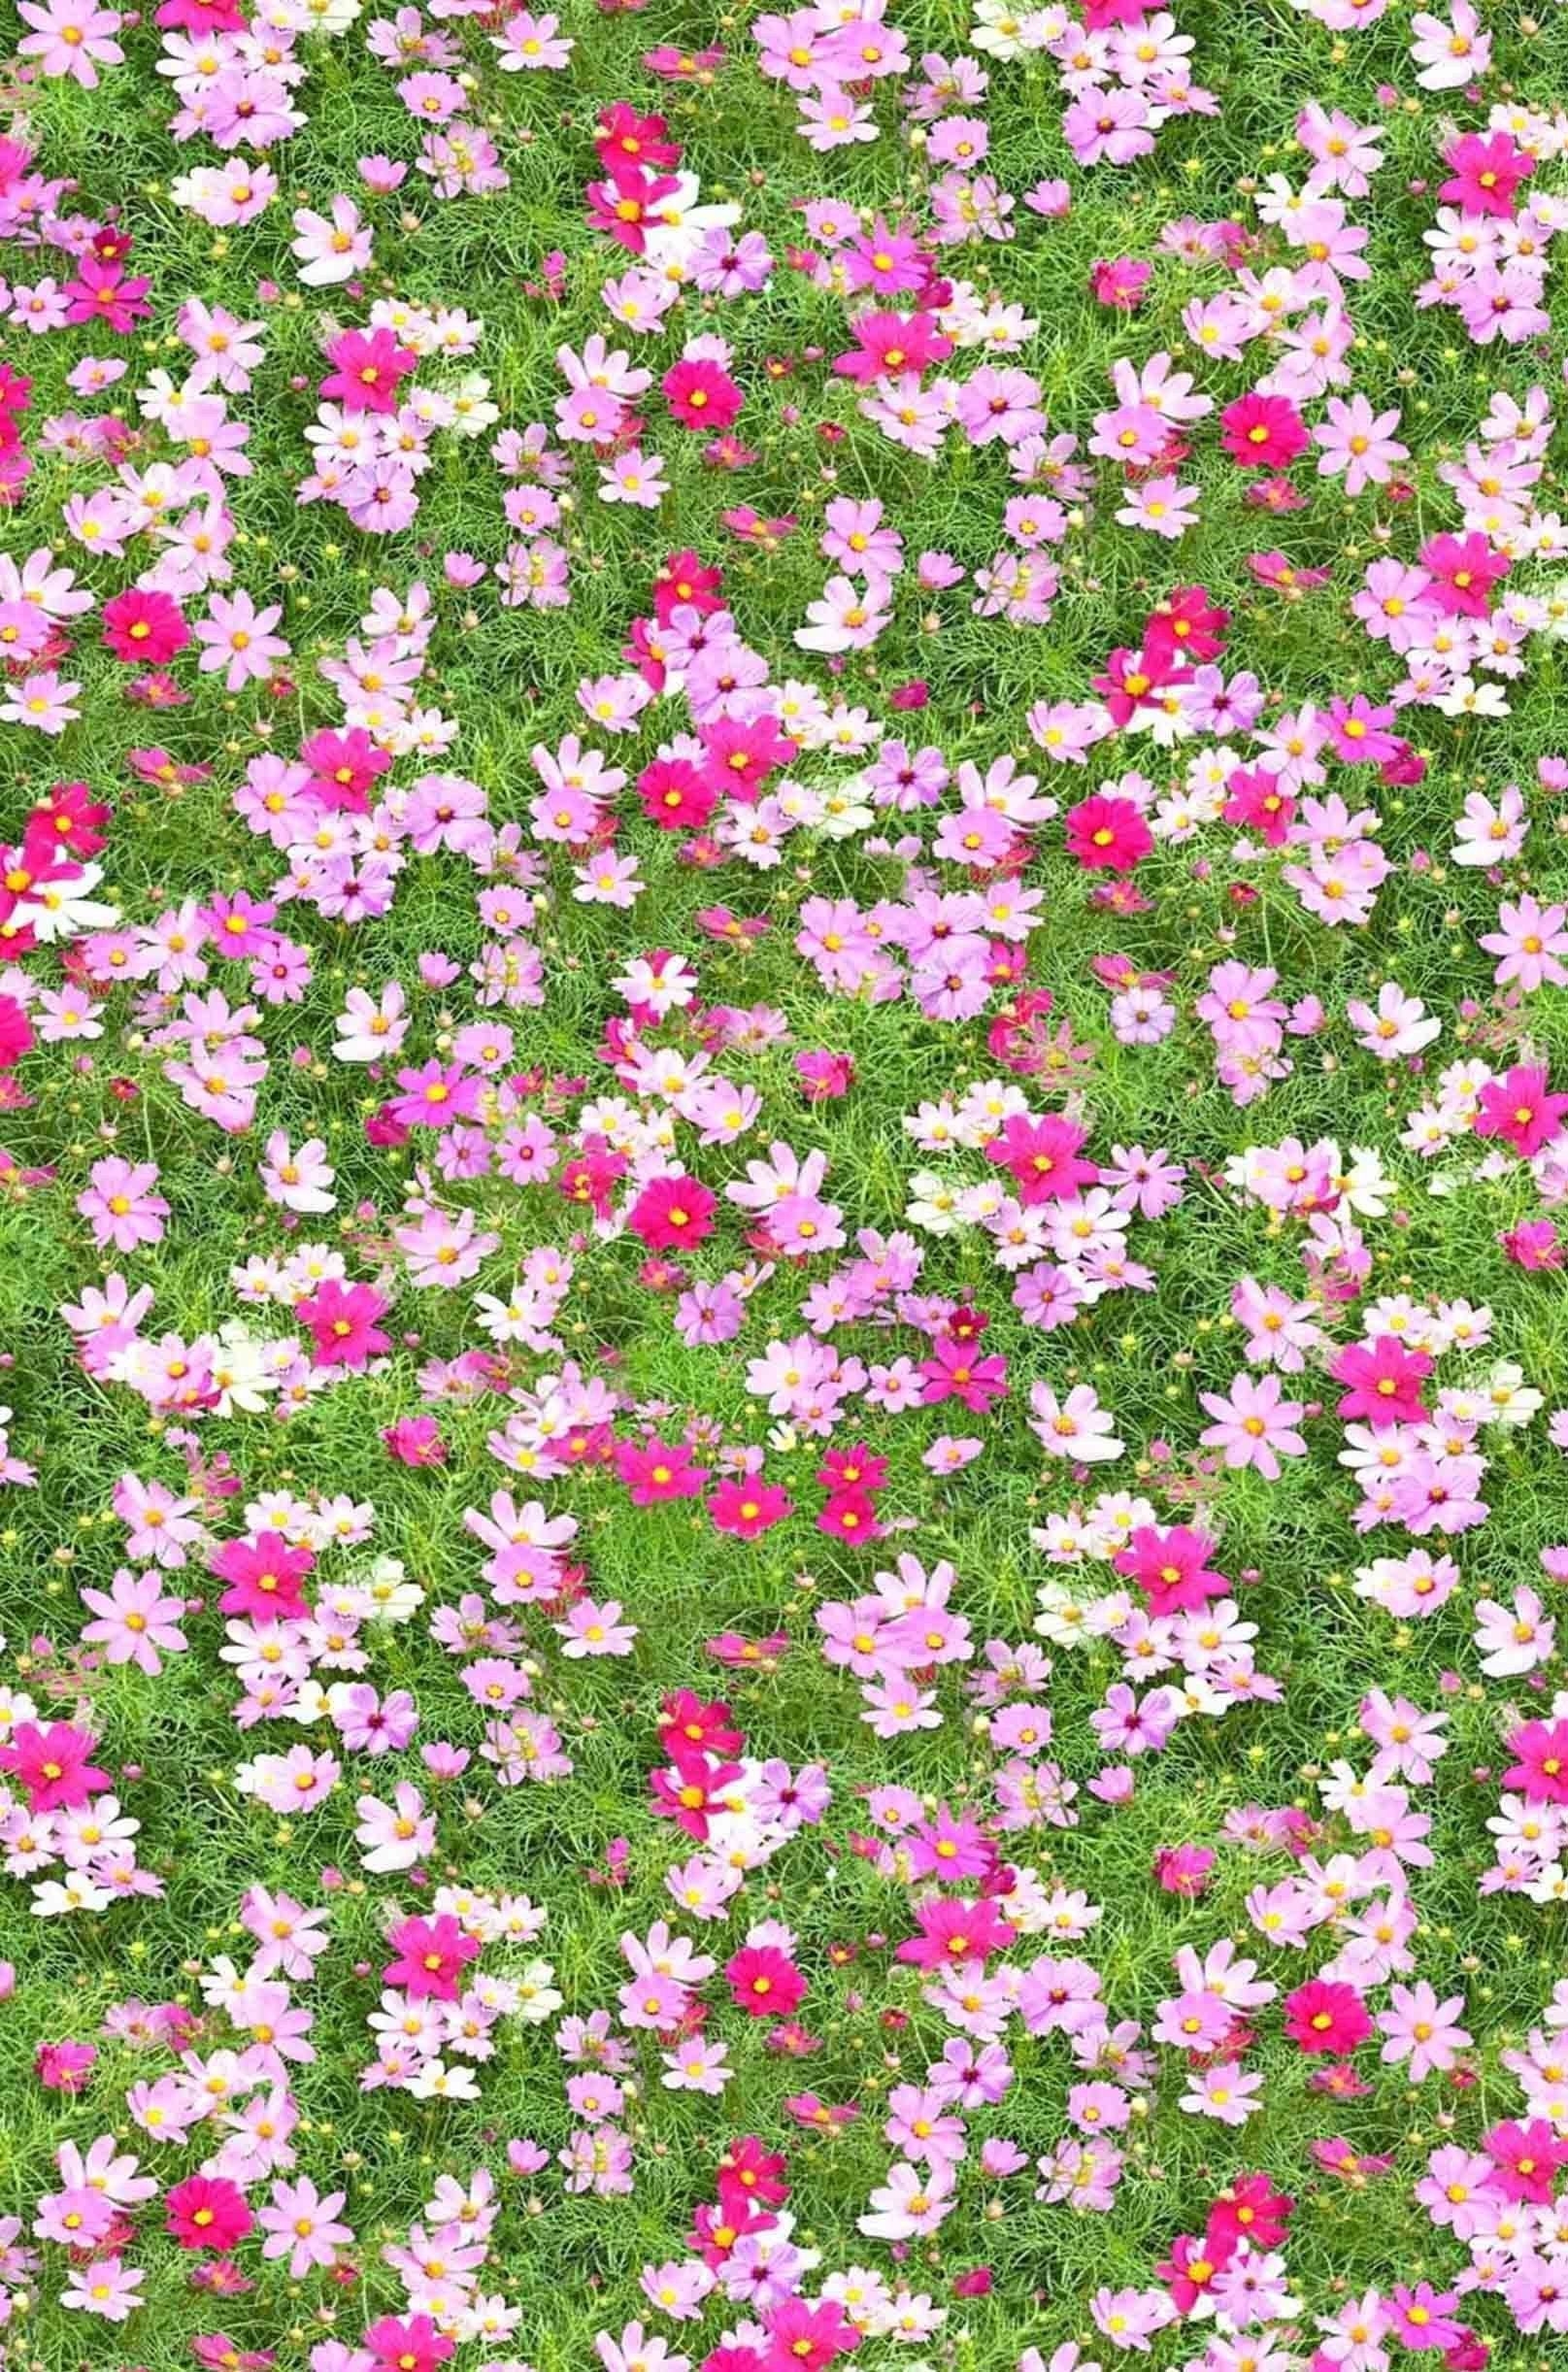 3D Grassland Flowers 1417 Stair Risers Wallpaper AJ Wallpaper 